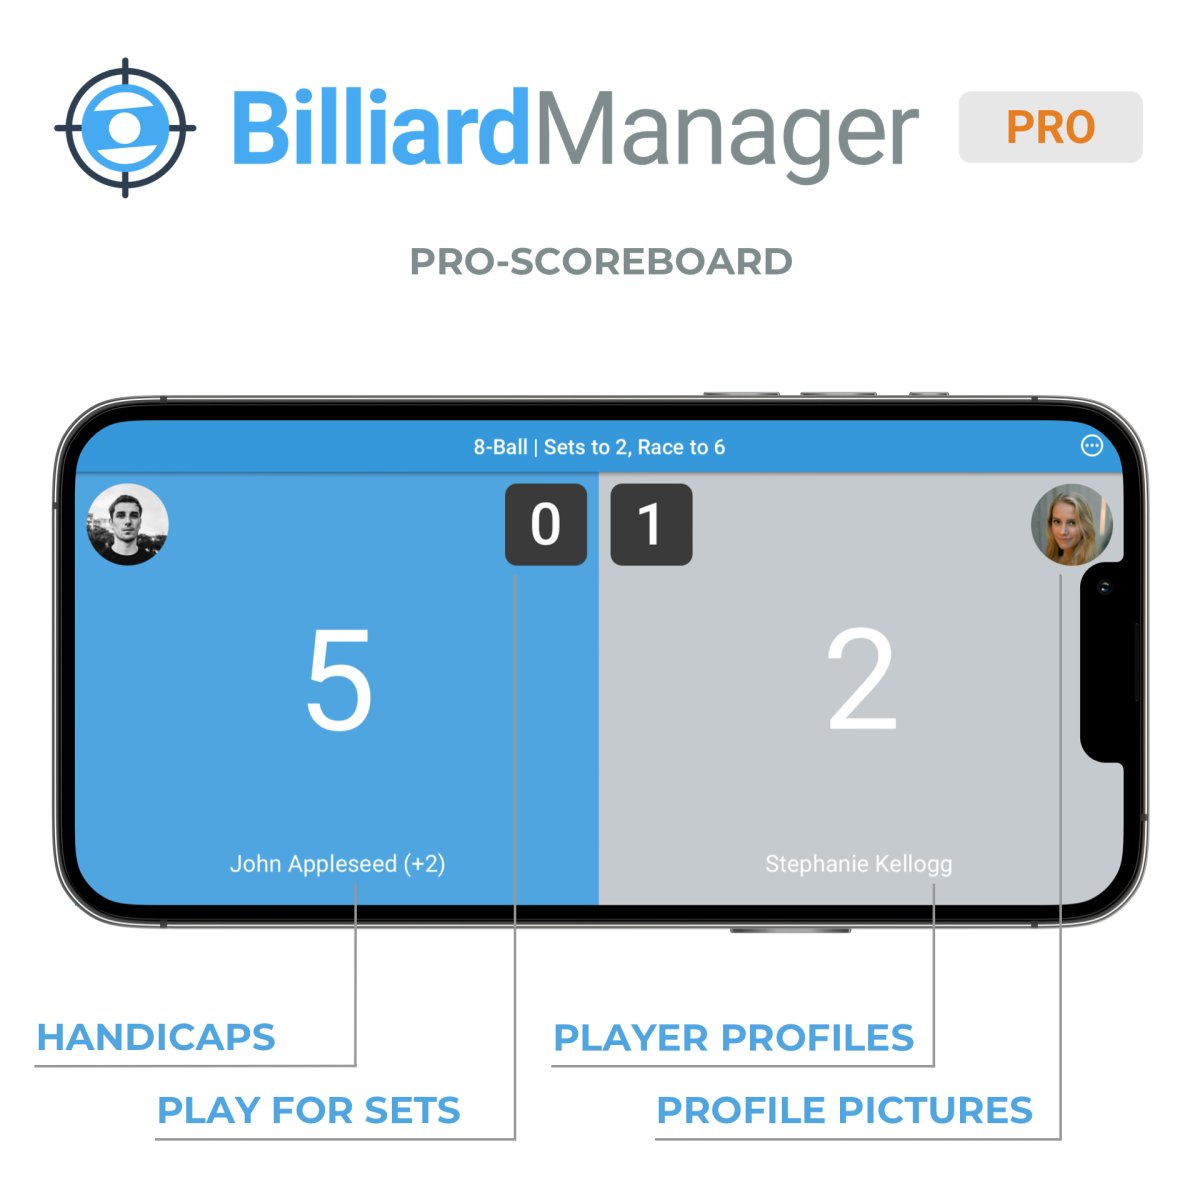 BilliardManager_Pro_Scoreboard.jpg